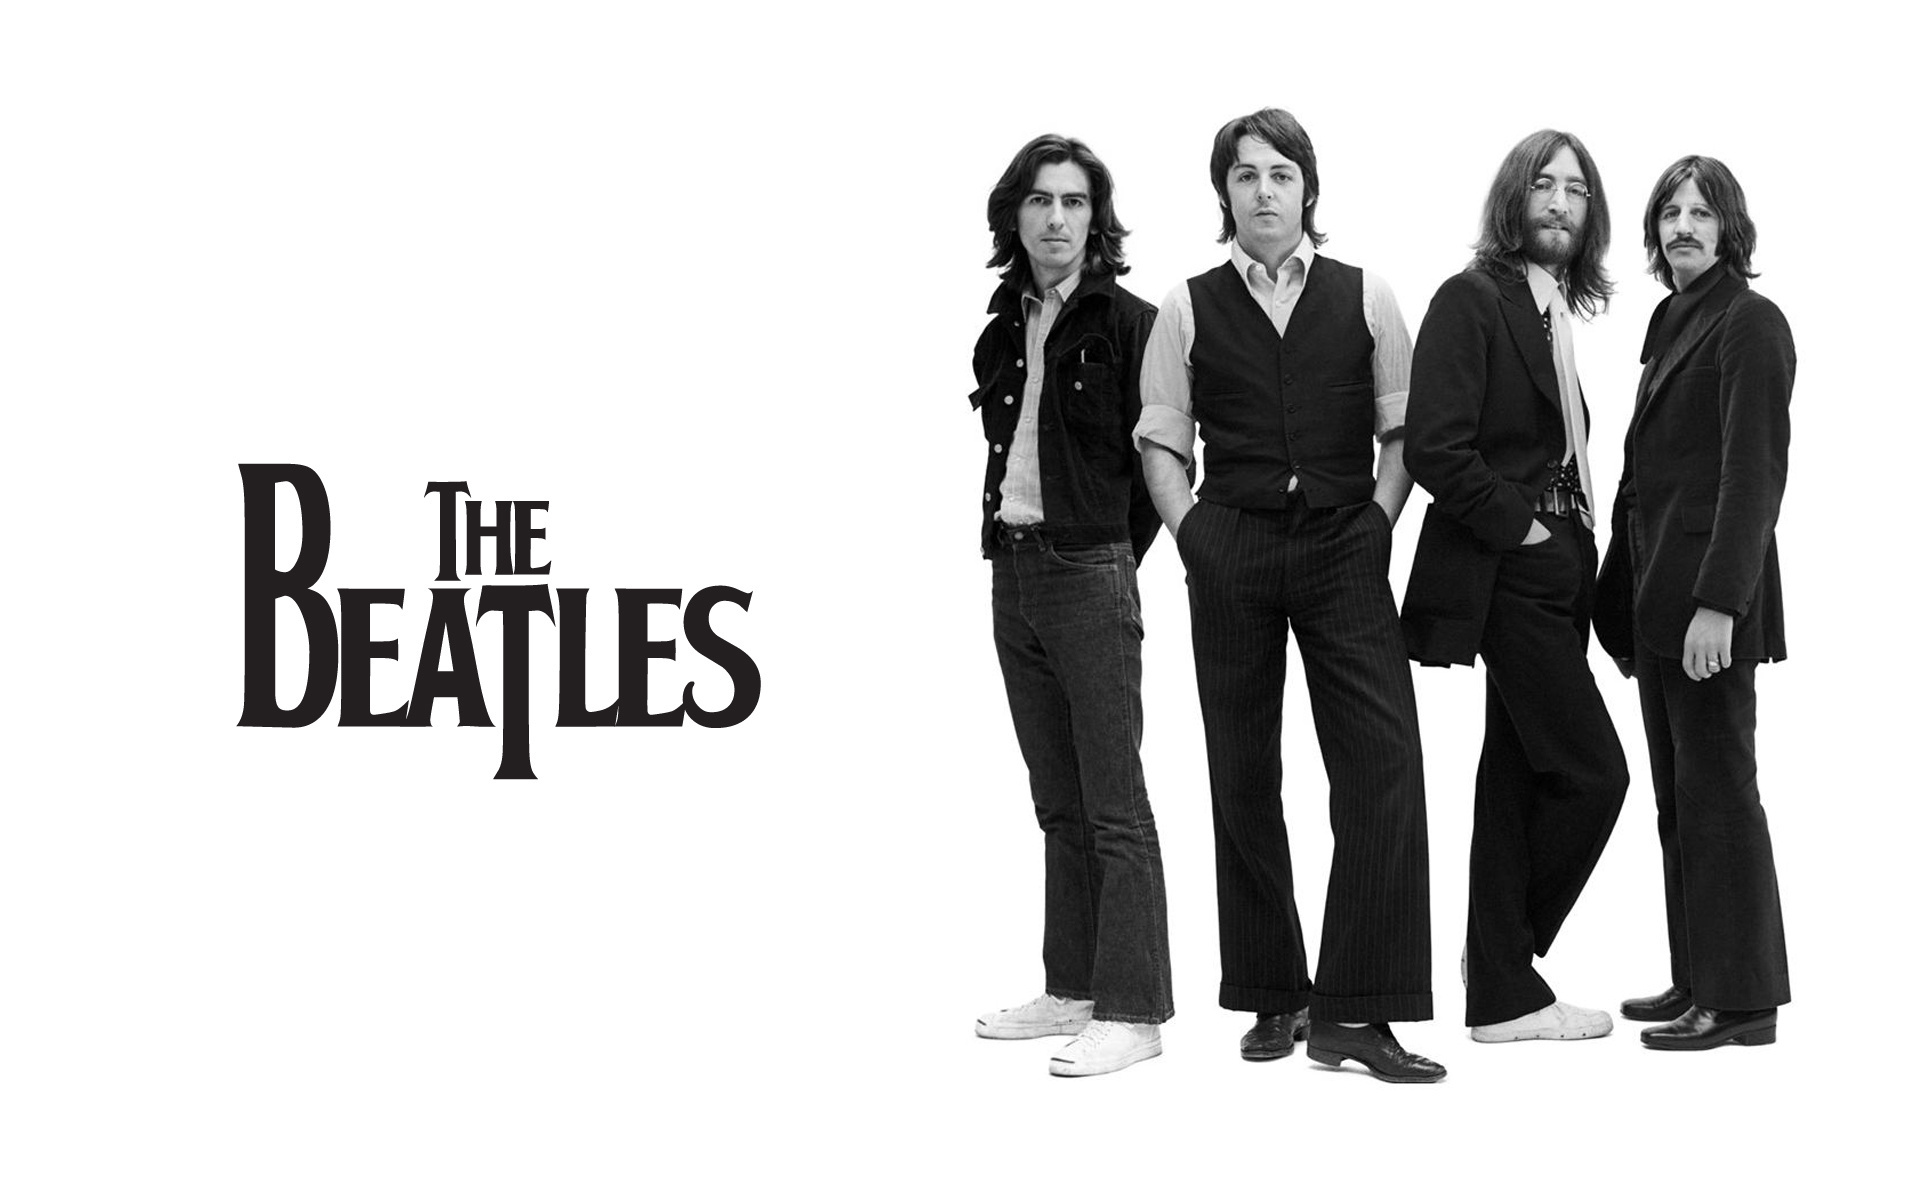 Musik & Berättarkväll om The Beatles lördag 31 okt